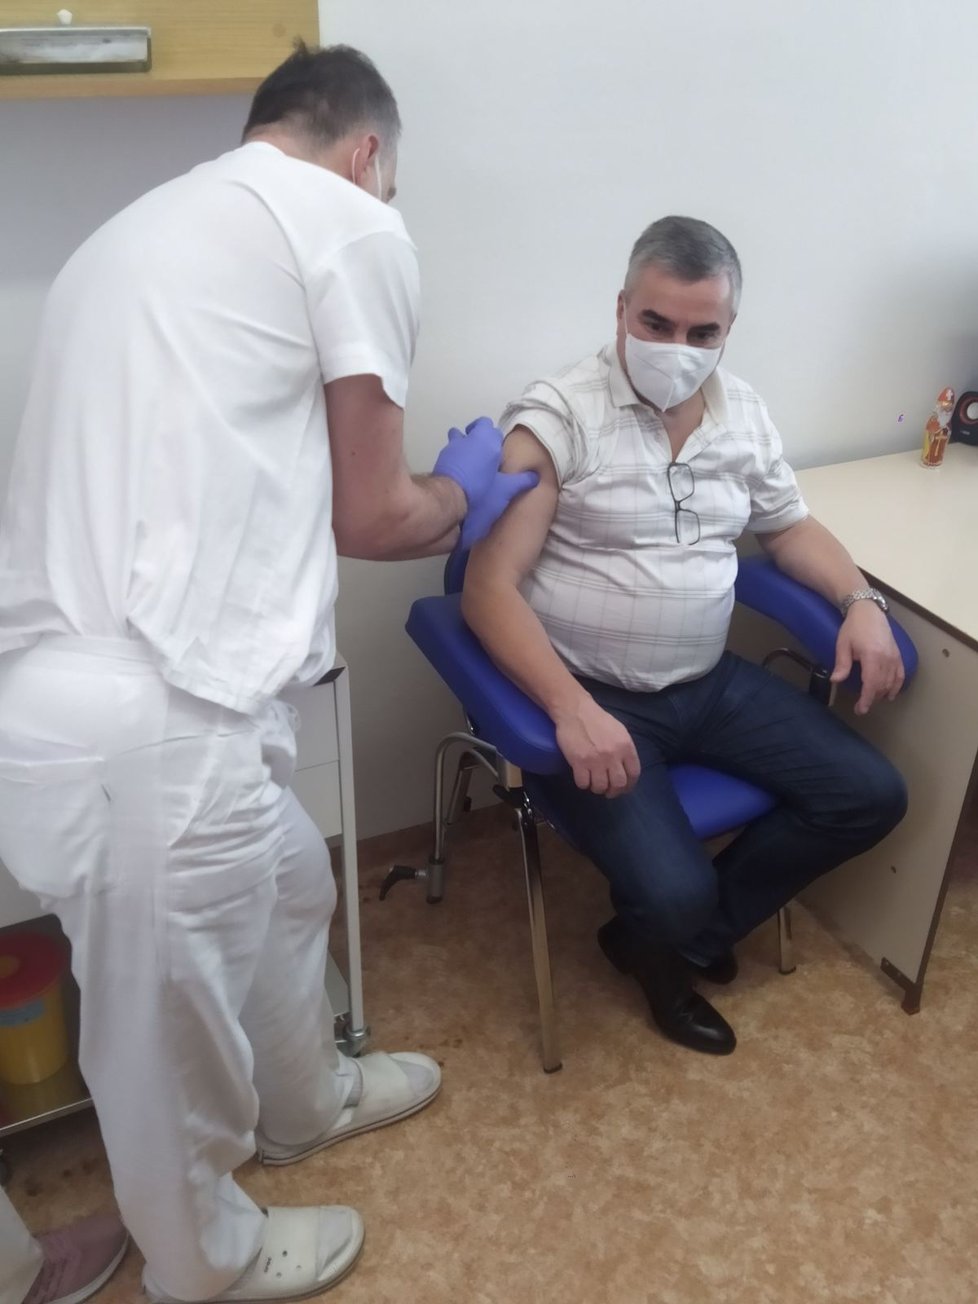 Ve Fakultní nemocnici Brno zahájili očkování proti covidu: Ředitel nemocnice Jaroslav Štěrba (27. 12. 2020)